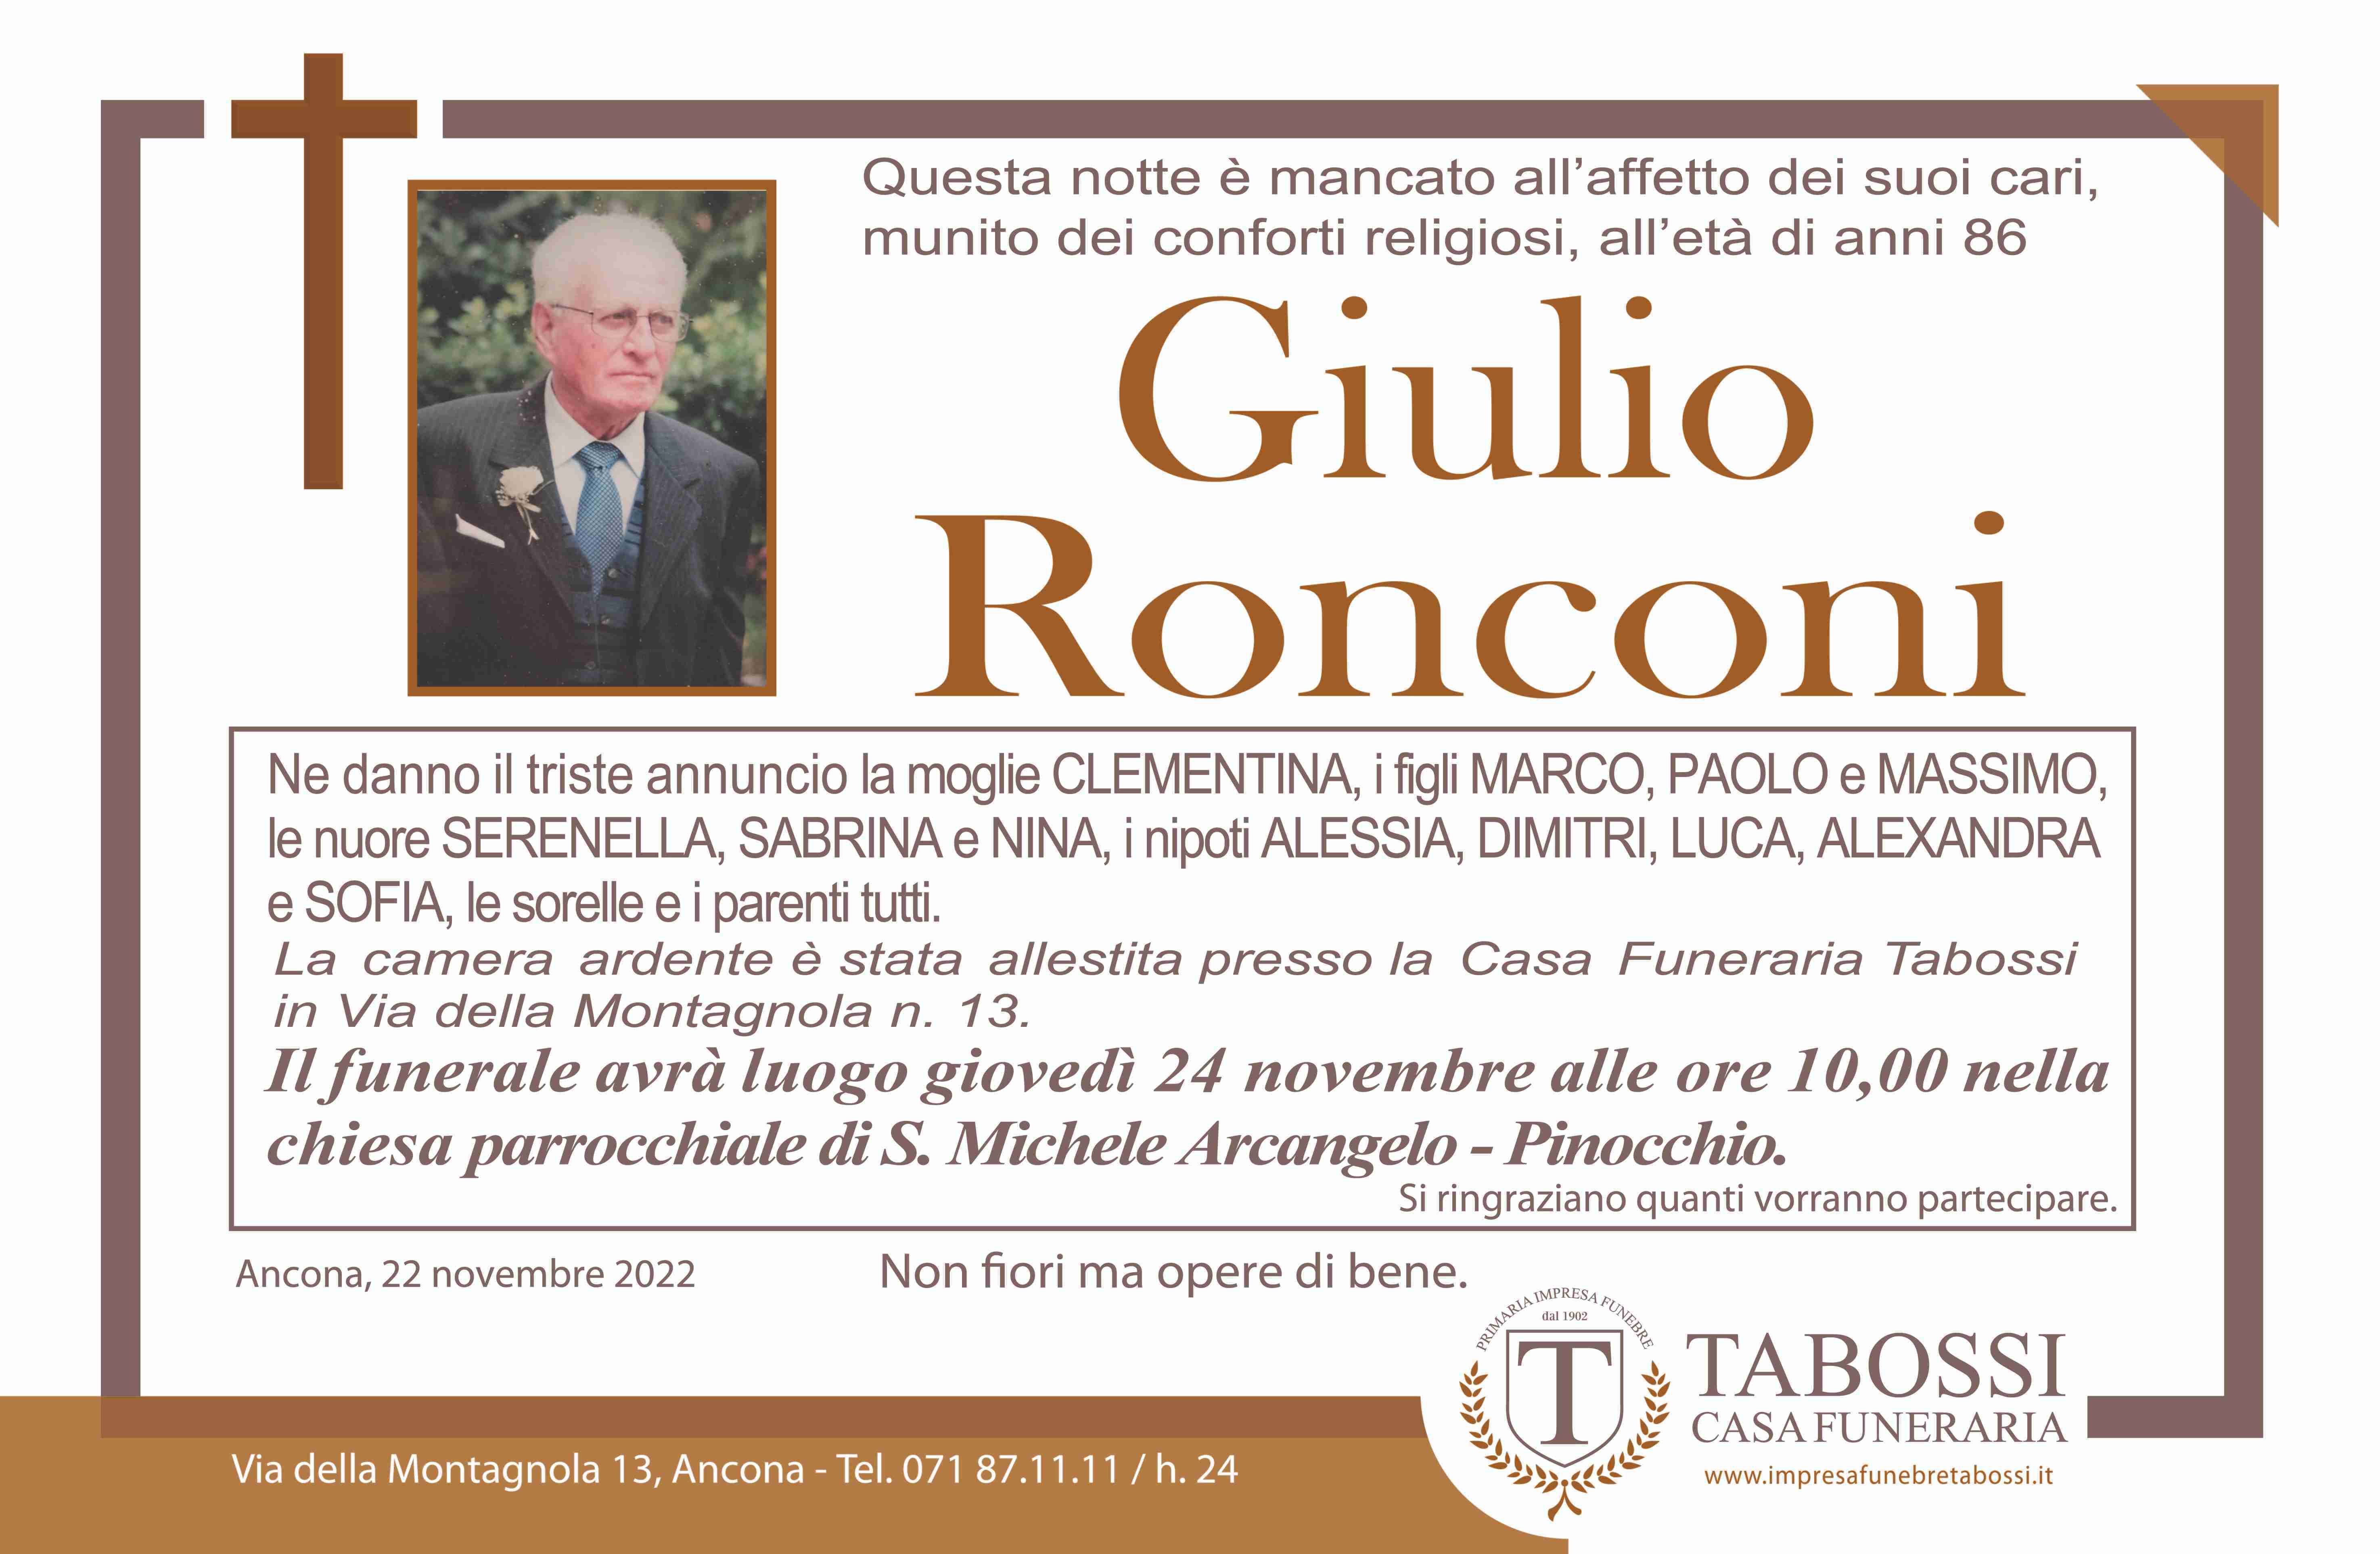 Giulio Ronconi